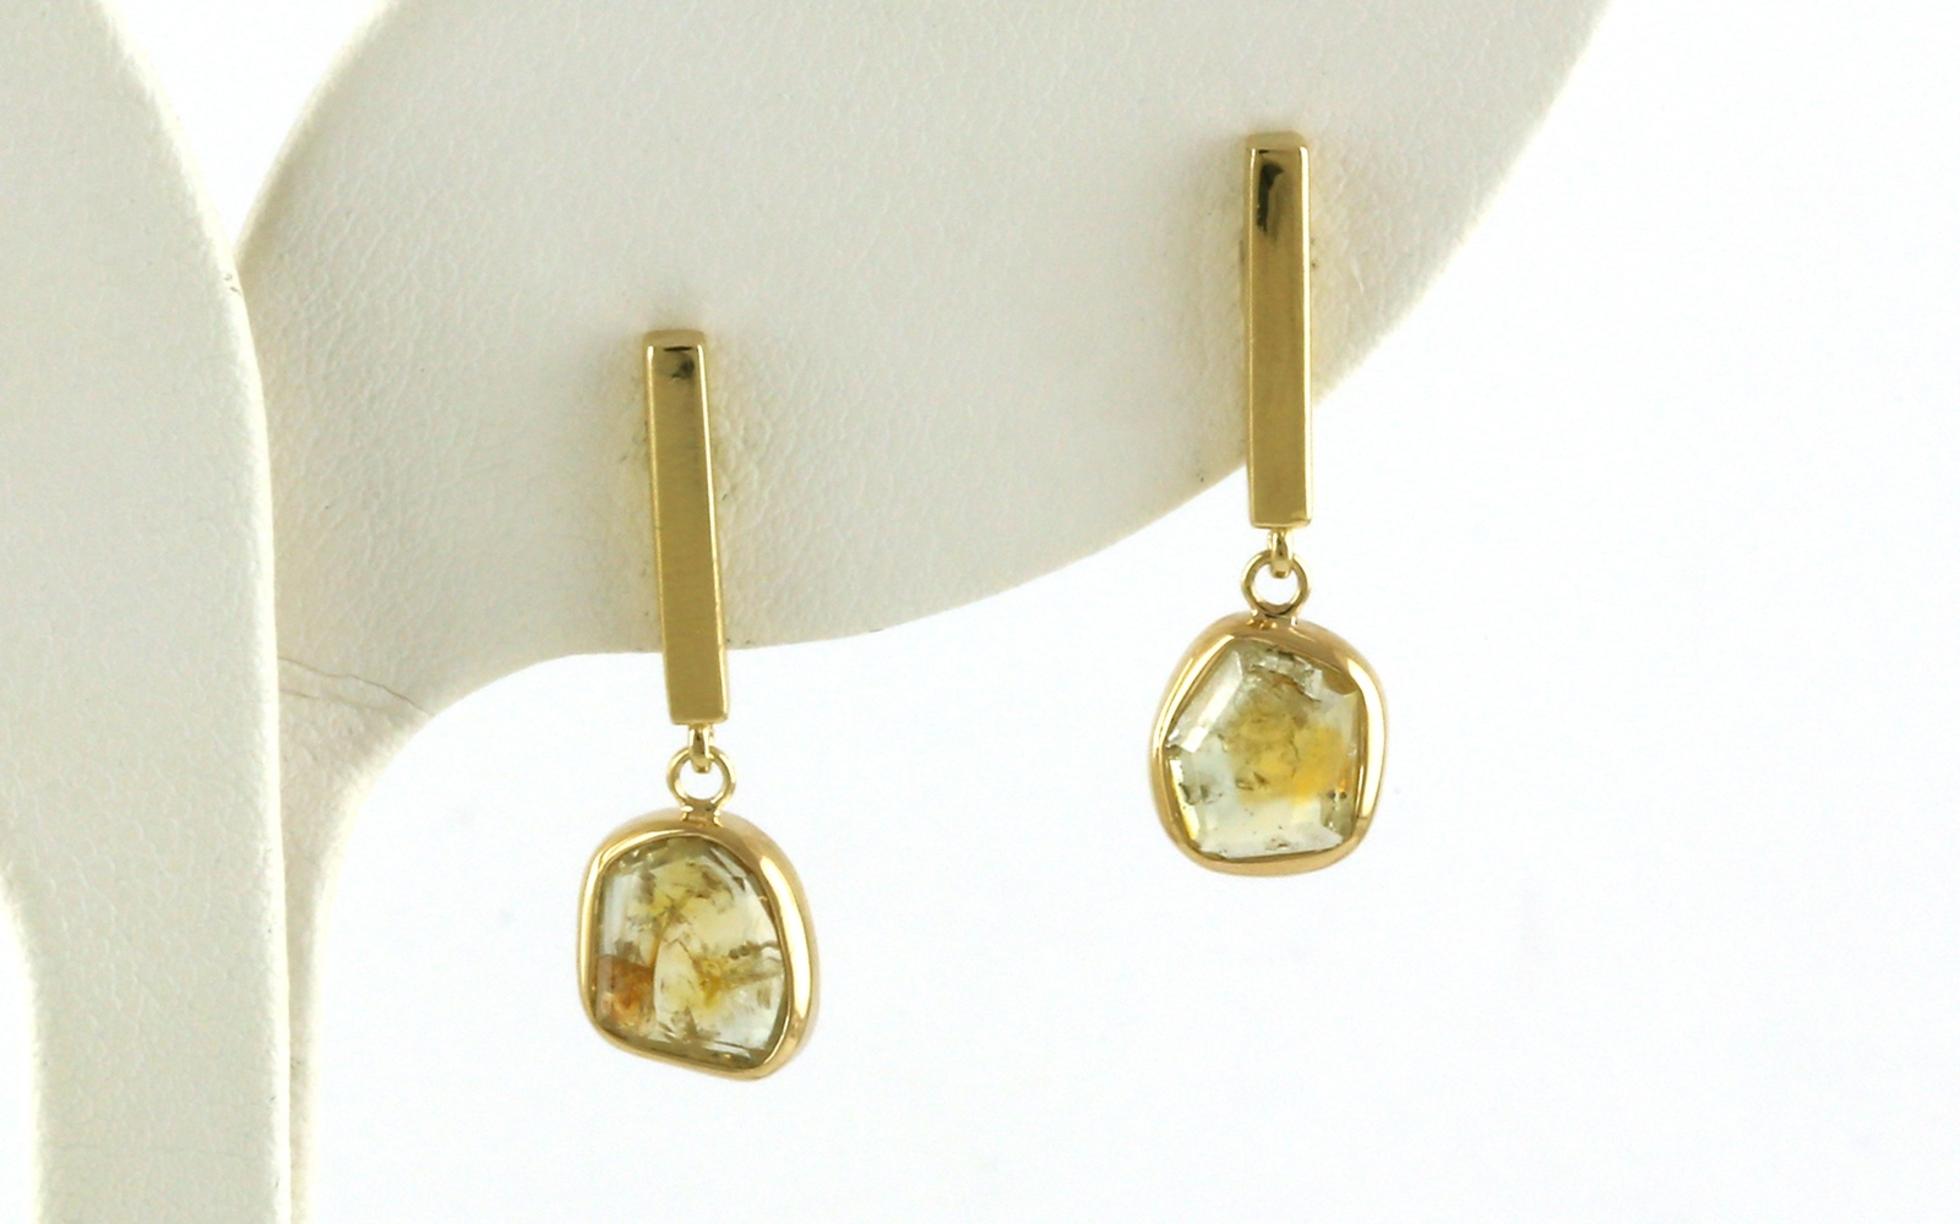 Bezel-set Rose-cut Yellow Montana Sapphire Vertical Bar Dangle Earrings Yellow Gold (2.26cts TWT)